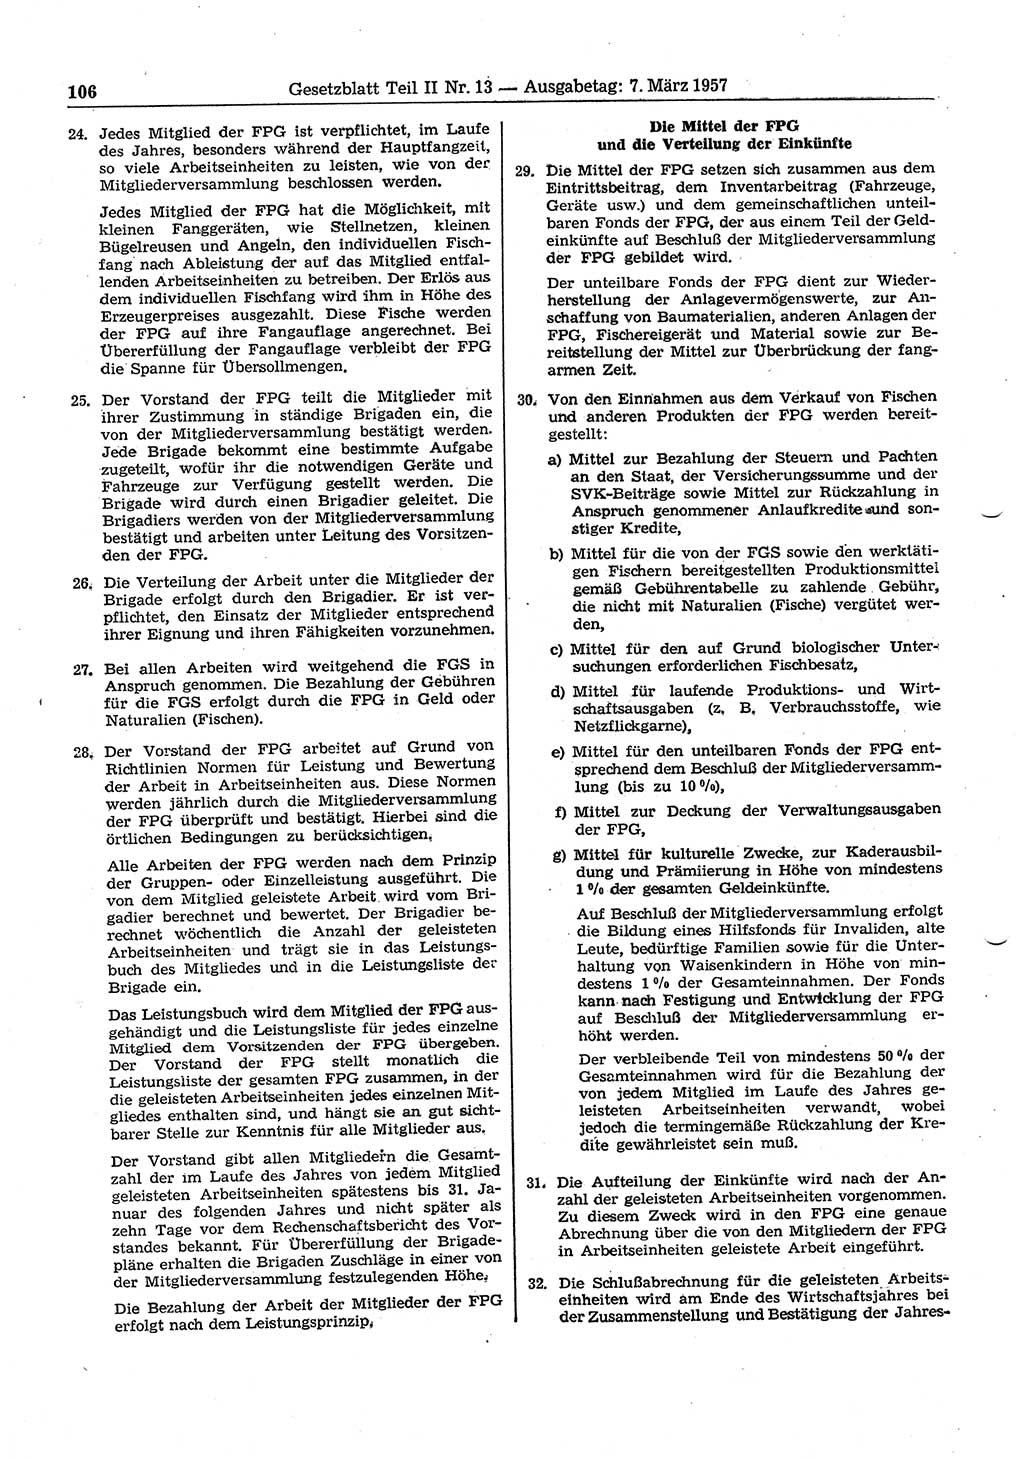 Gesetzblatt (GBl.) der Deutschen Demokratischen Republik (DDR) Teil ⅠⅠ 1957, Seite 106 (GBl. DDR ⅠⅠ 1957, S. 106)